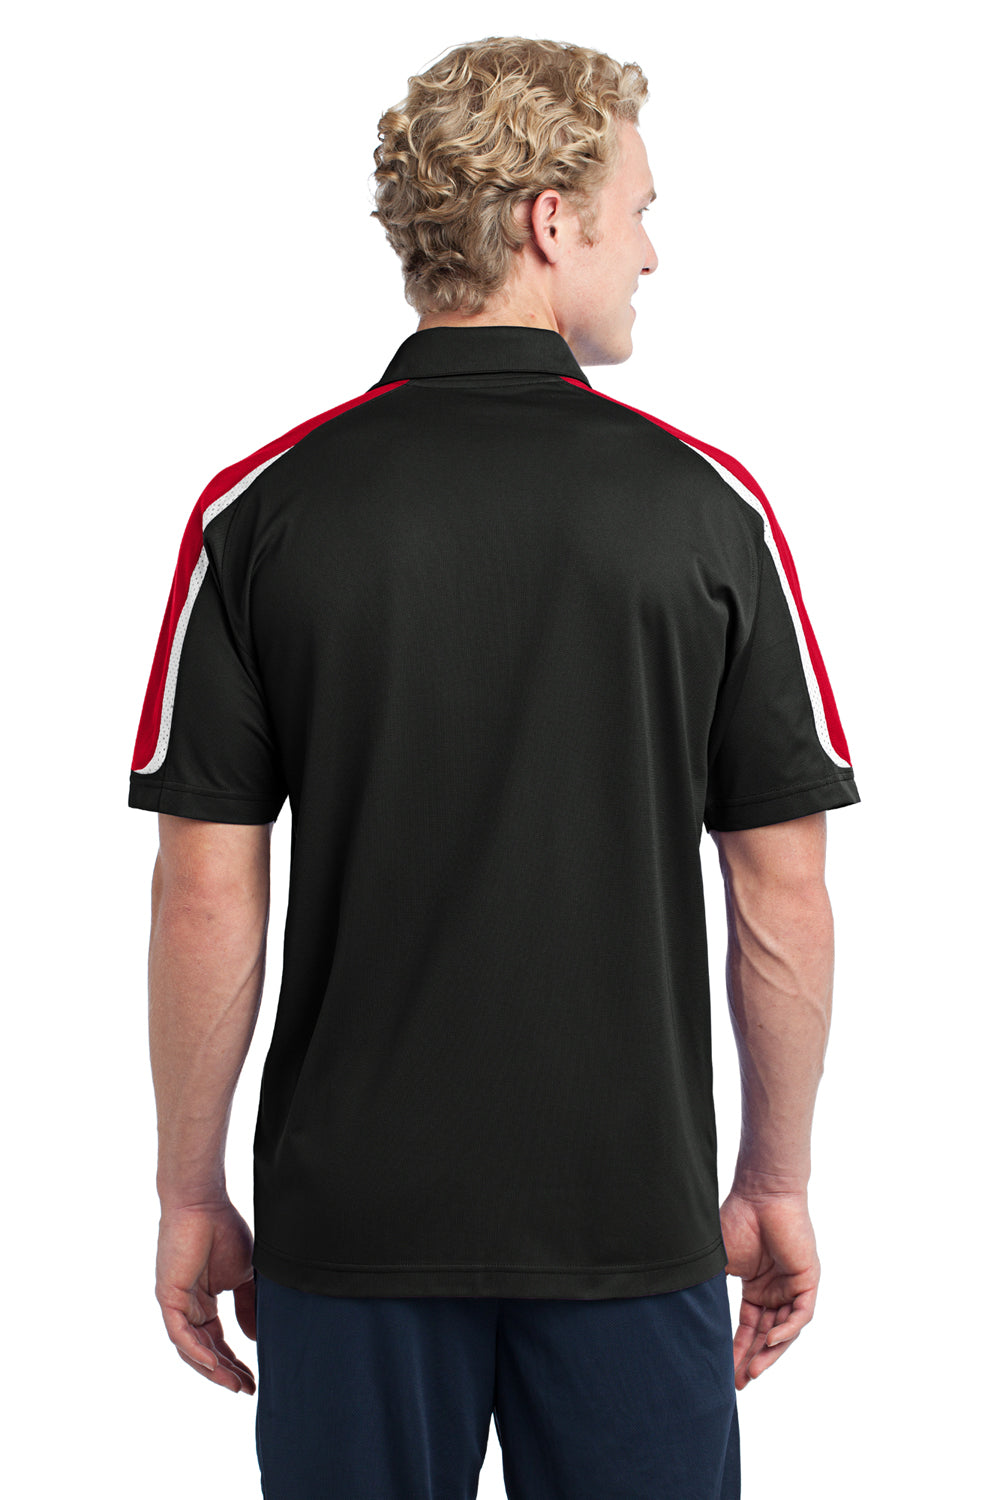 Sport-Tek ST658 Mens Sport-Wick Moisture Wicking Short Sleeve Polo Shirt Black/White/Red Back